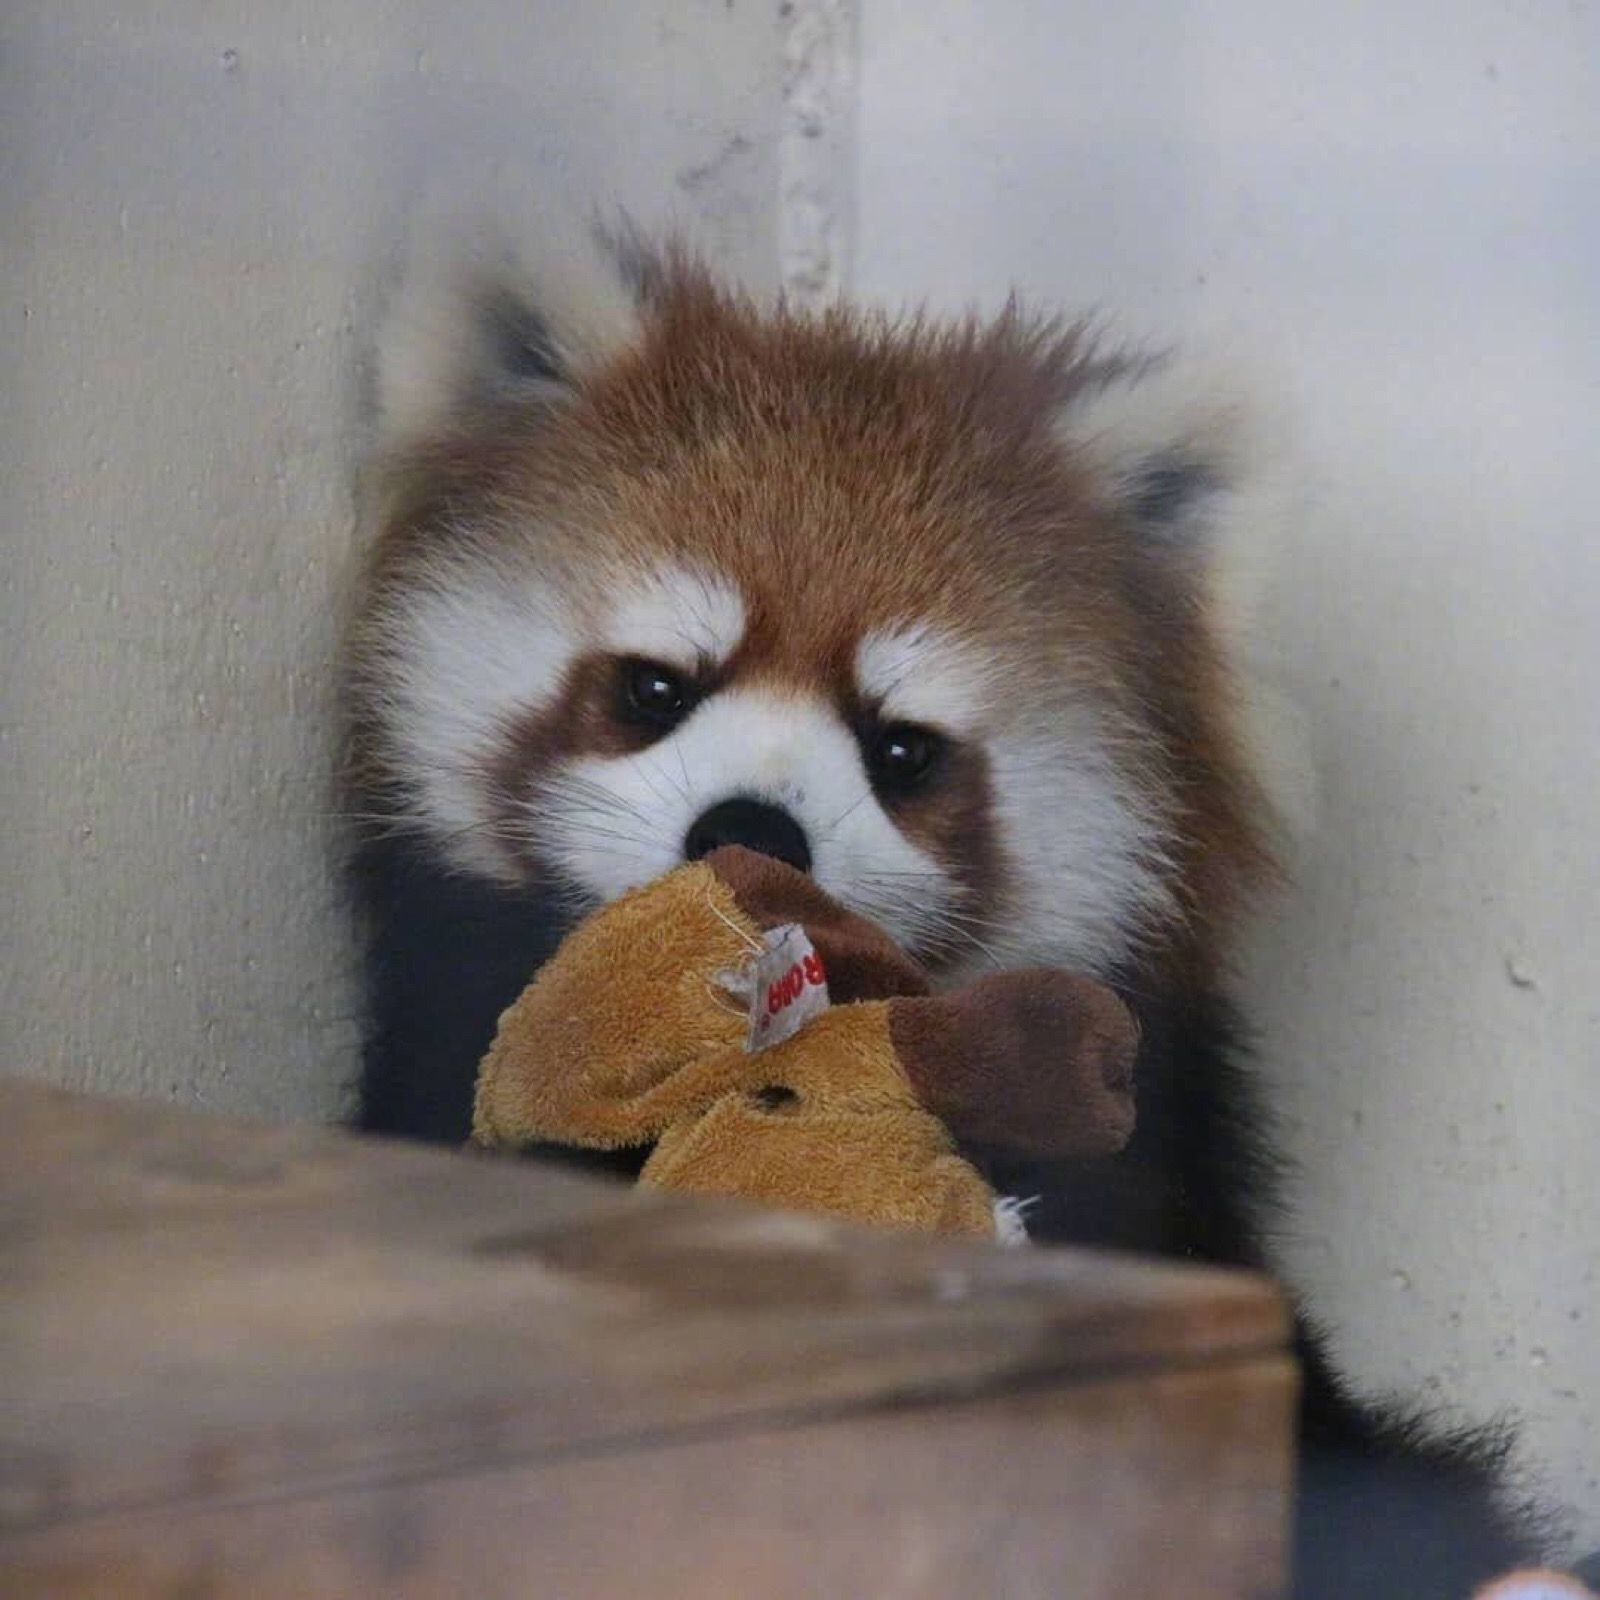 摄影师minatomirai镜头下円山动物园的小熊猫们,爱吃苹果,爱撒娇